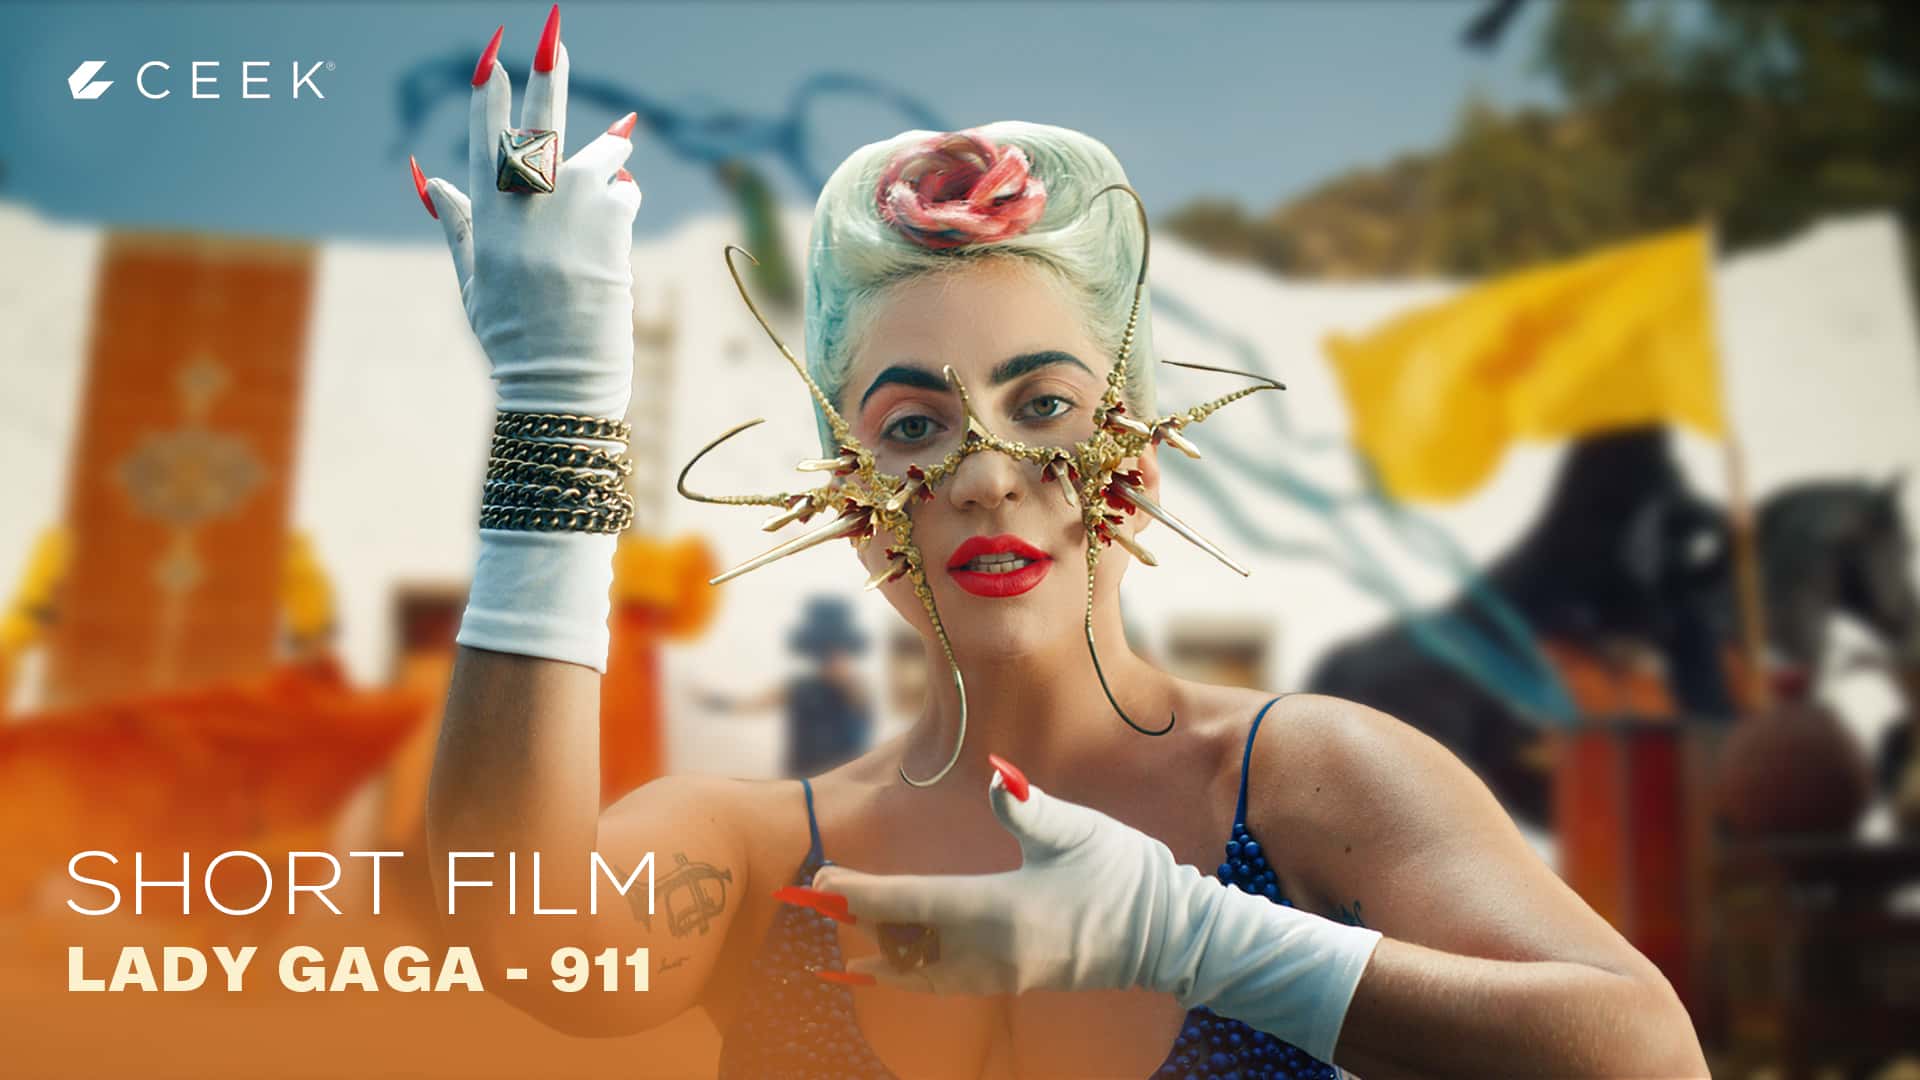 Short Film - Lady Gaga  911 ceek.com